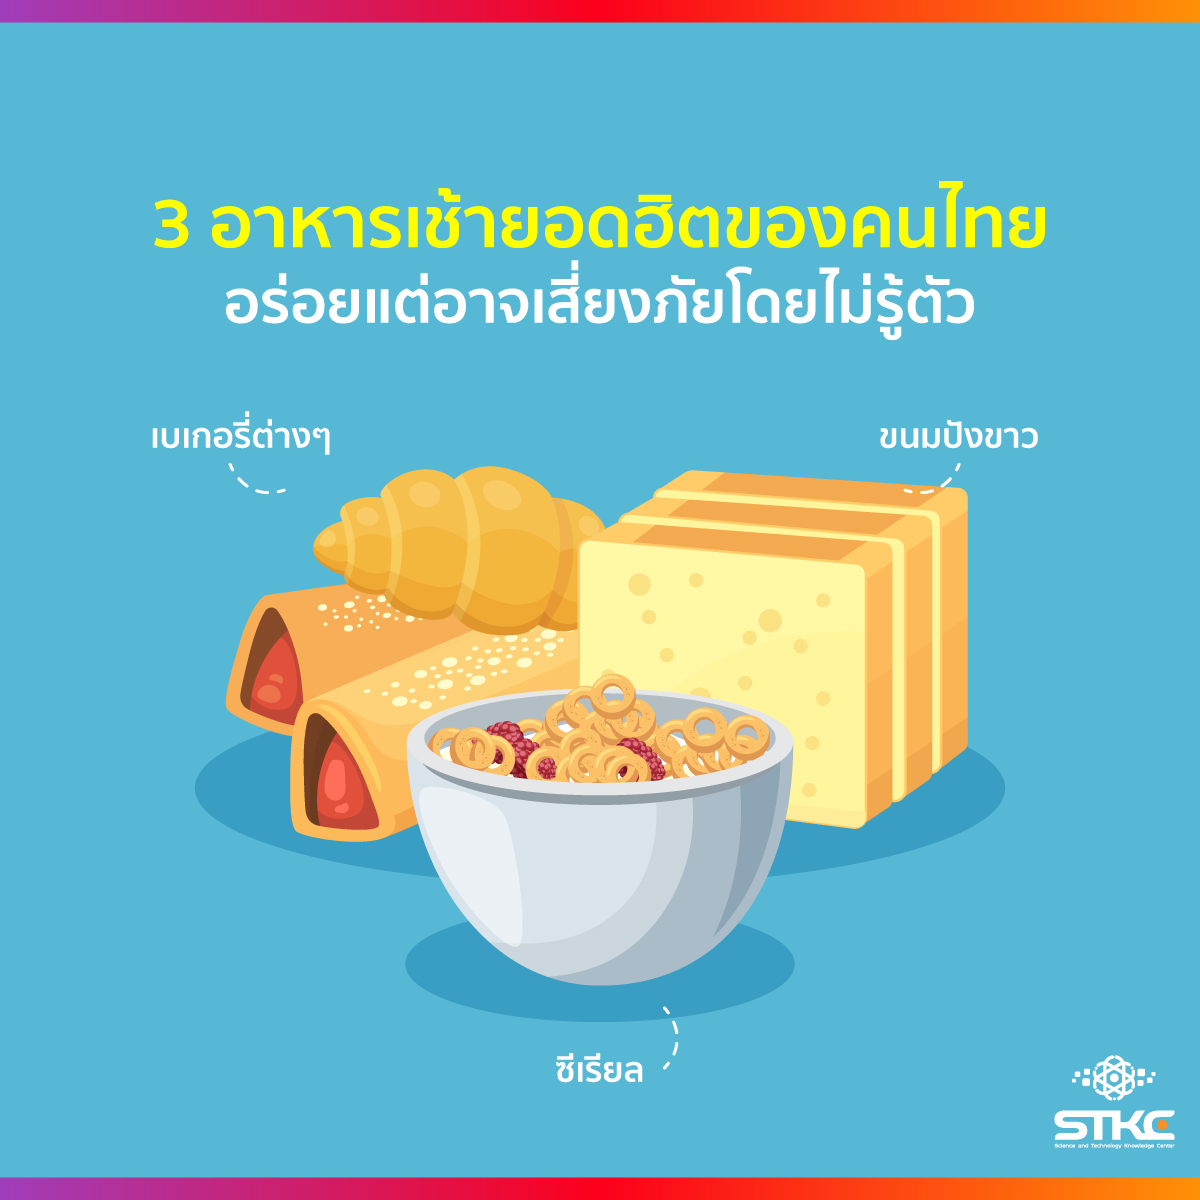 3 อาหารเช้ายอดฮิตของคนไทย อร่อยแต่อาจเสี่ยงภัยโดยไม่รู้ตัว